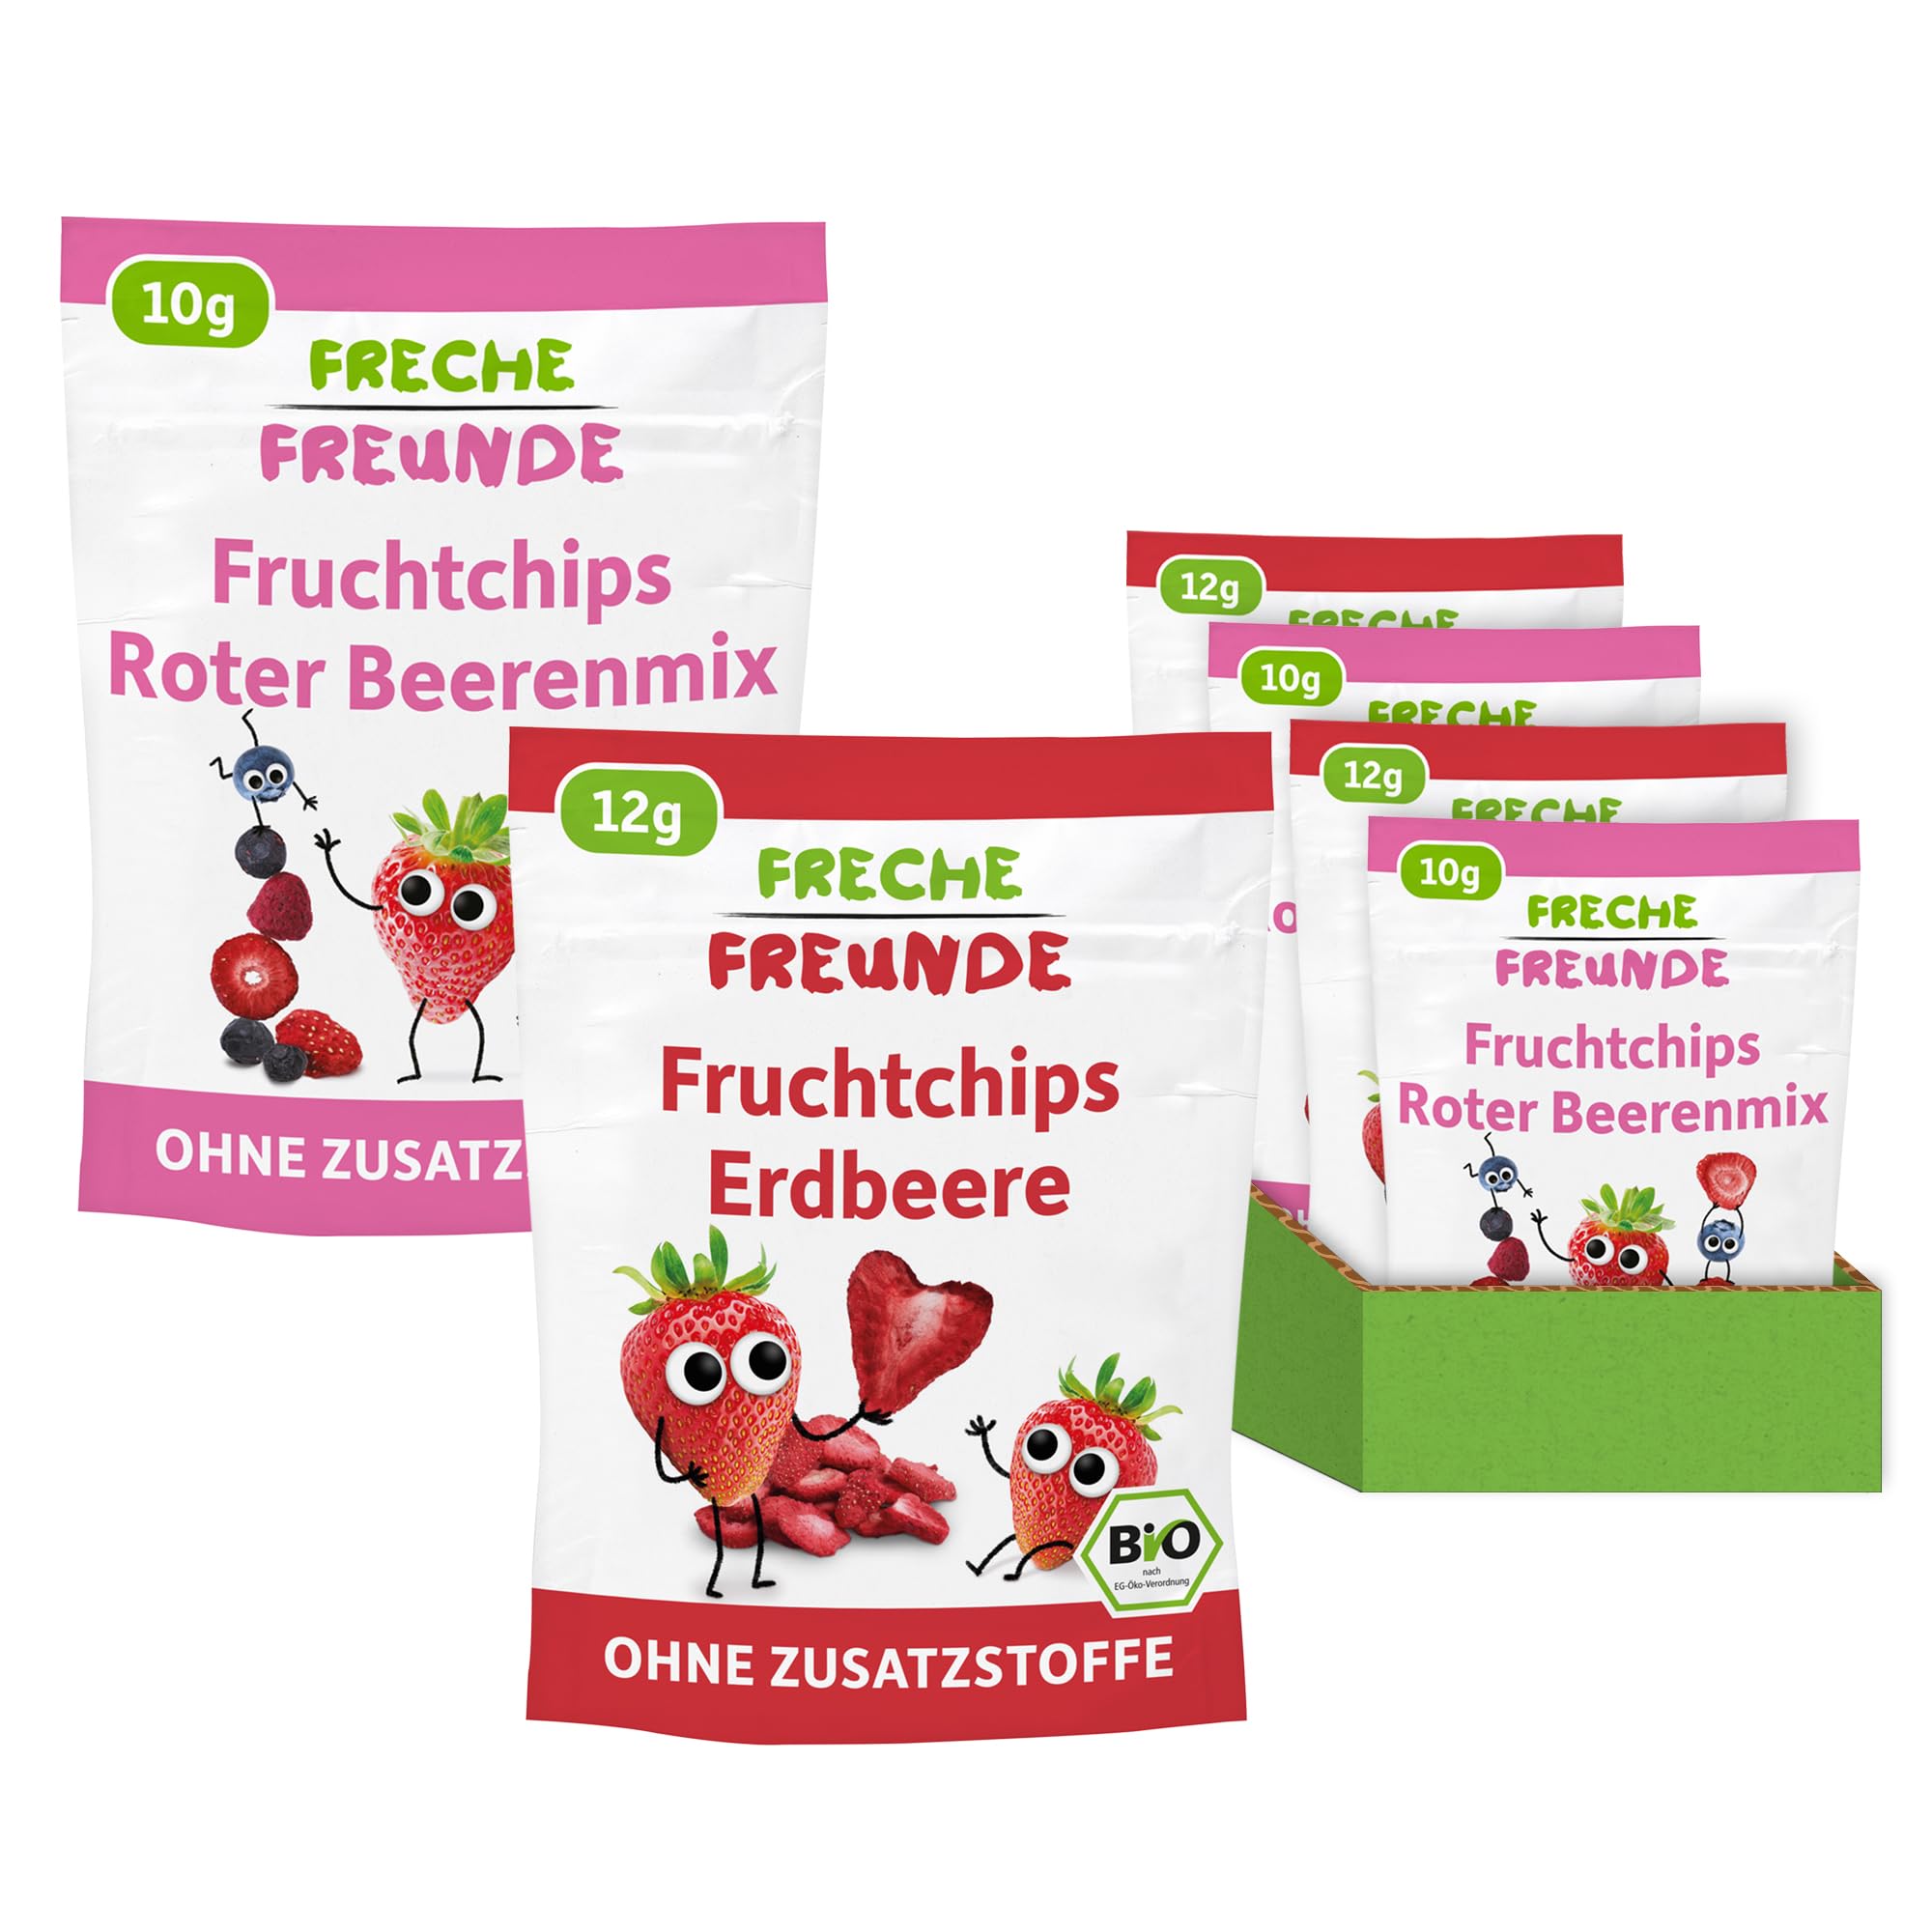 FRECHE FREUNDE Bio Fruchtchips 12 x Erdbeere & 12 x Roter Beerenmix, gefriergetrocknete Obst Chips Erdbeere, ohne Zuckerzusatz, vegan, laktosefrei, glutenfrei, 24er Pack (12 x 12 g & 12 x 10g)